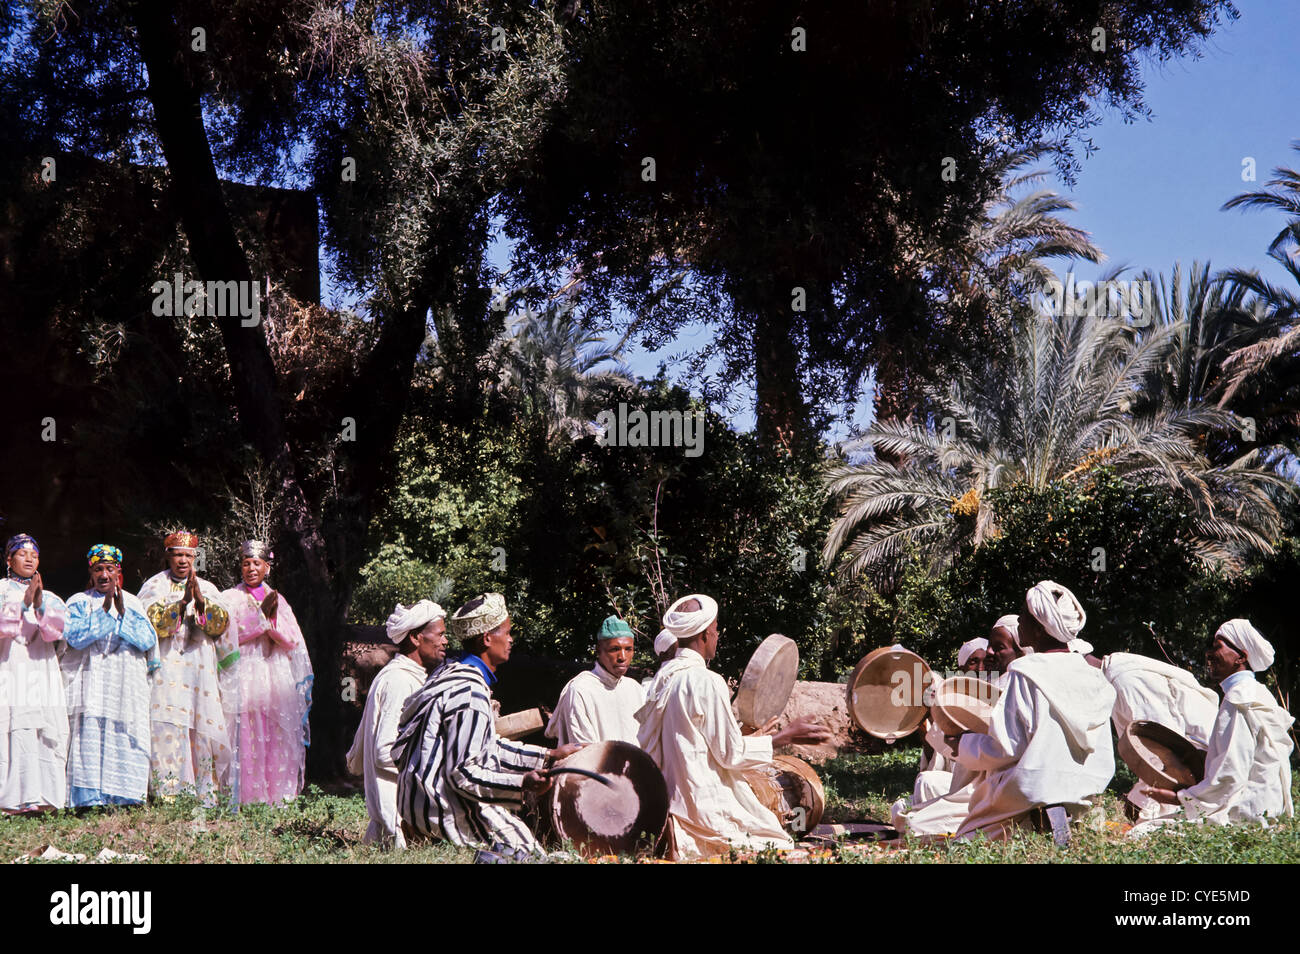 8296. Des années 1970, Archives de Diffa, Berbère, Maroc, vallée de récupération de l'Afrique du Nord Banque D'Images